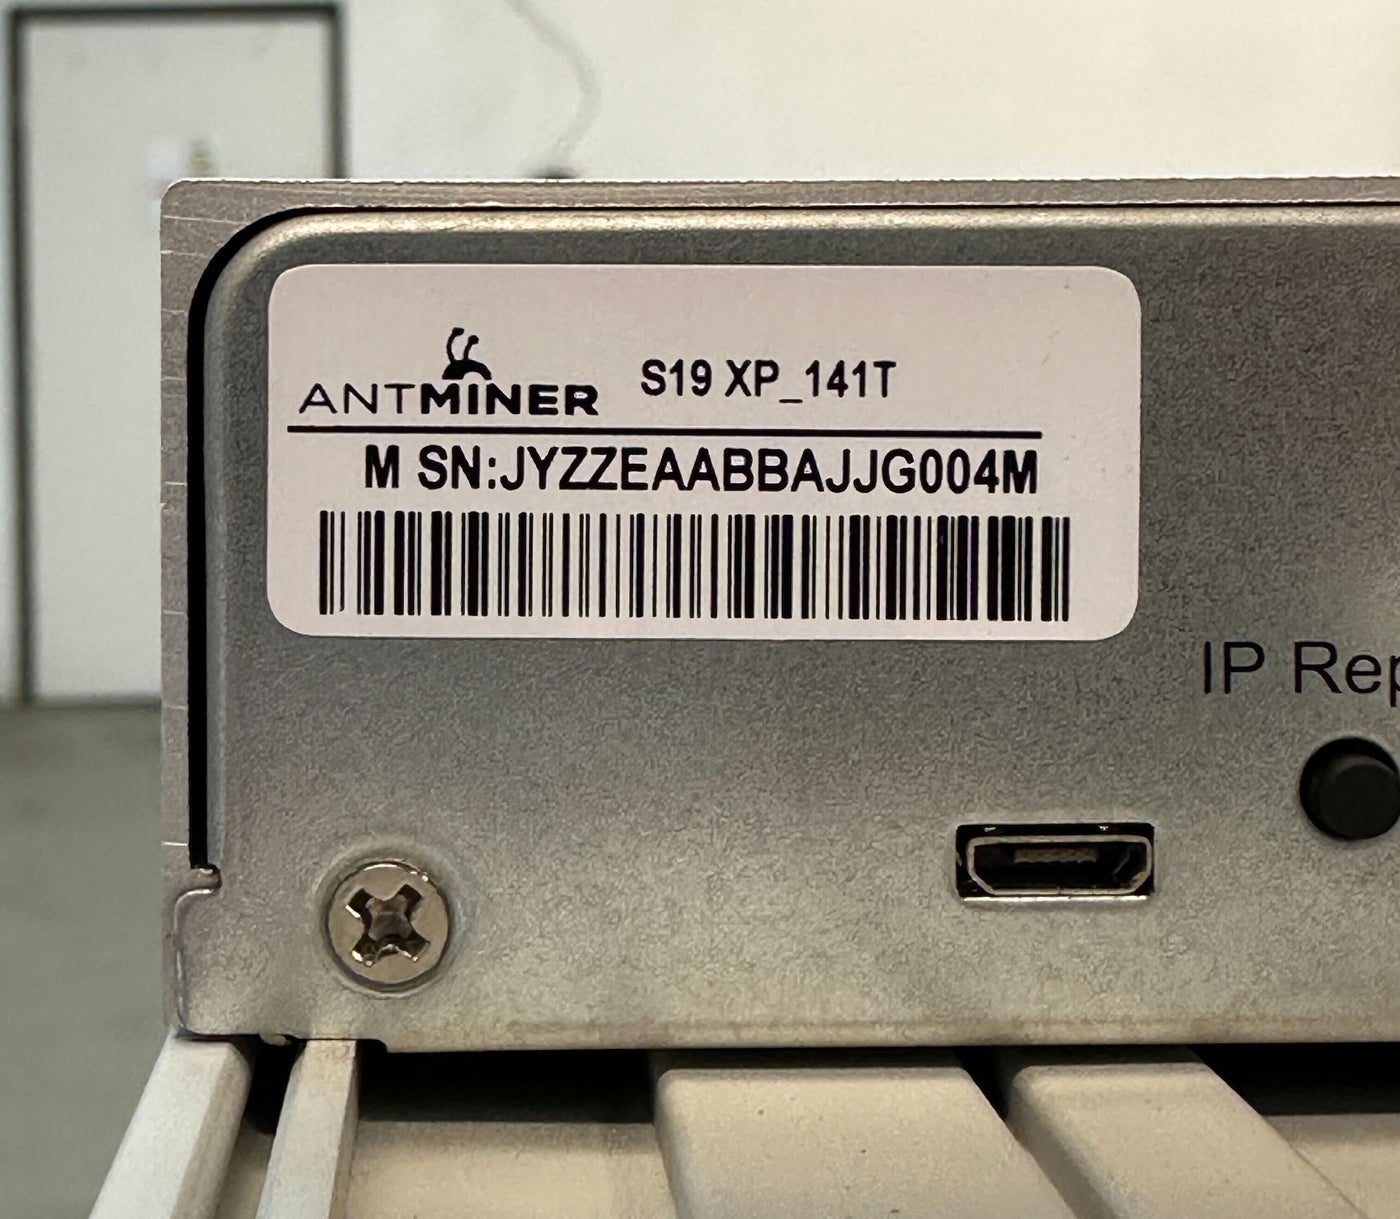 $.075 Hosting - Split Shares Beta - NEW Bitmain Antminer S19 XP 141 TH/s